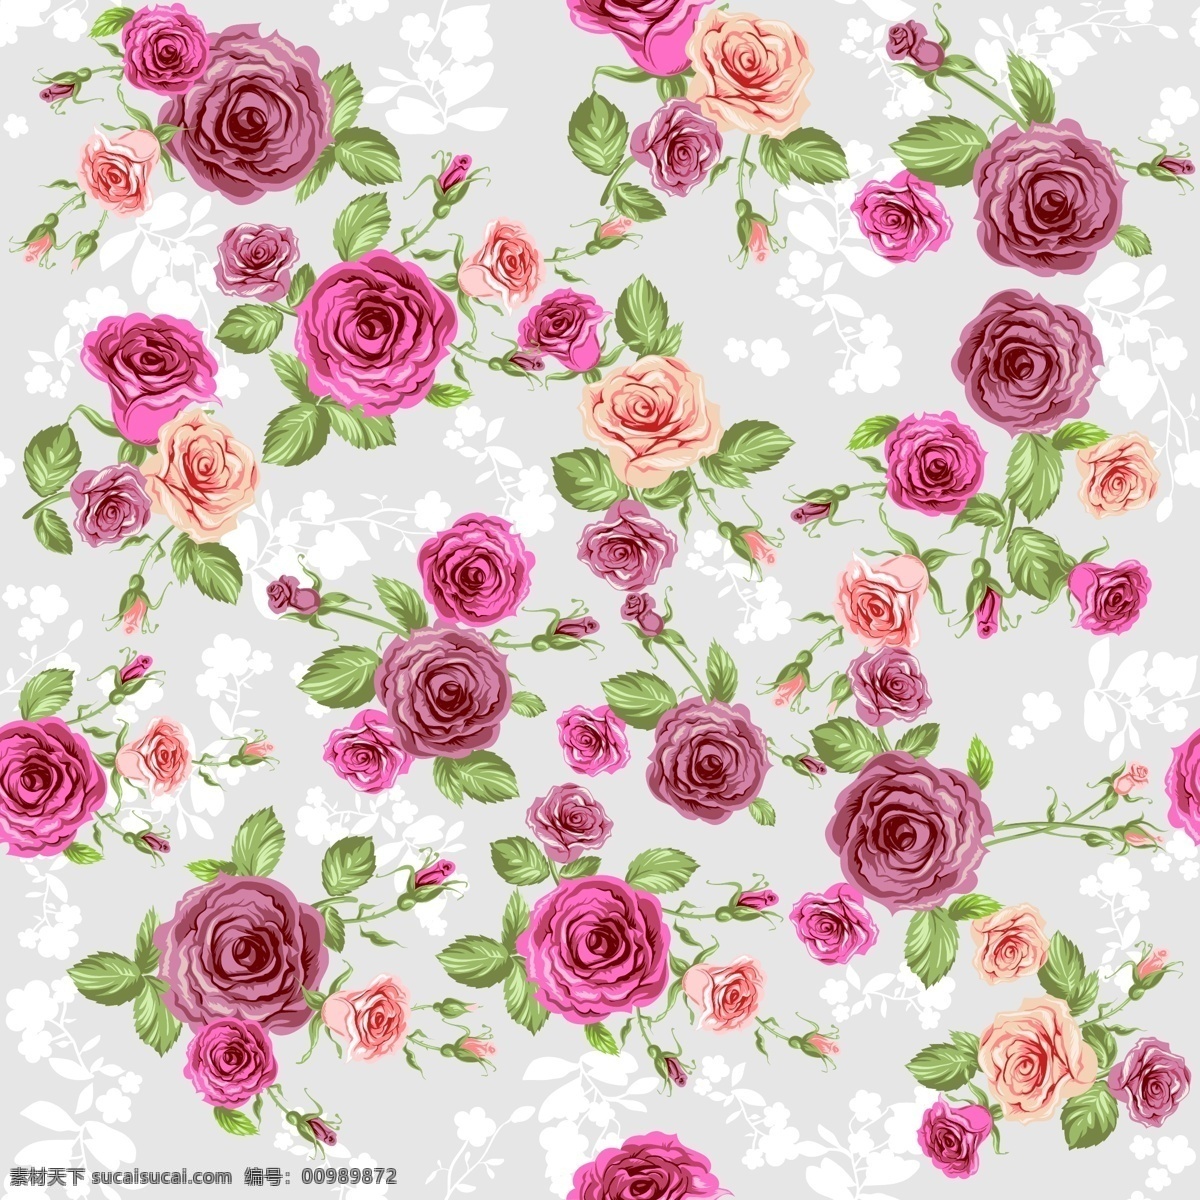 创造性 玫瑰 图案 图形 矢量 模式 矢量花朵 玫瑰图案 psd玫瑰 矢量图 其他矢量图